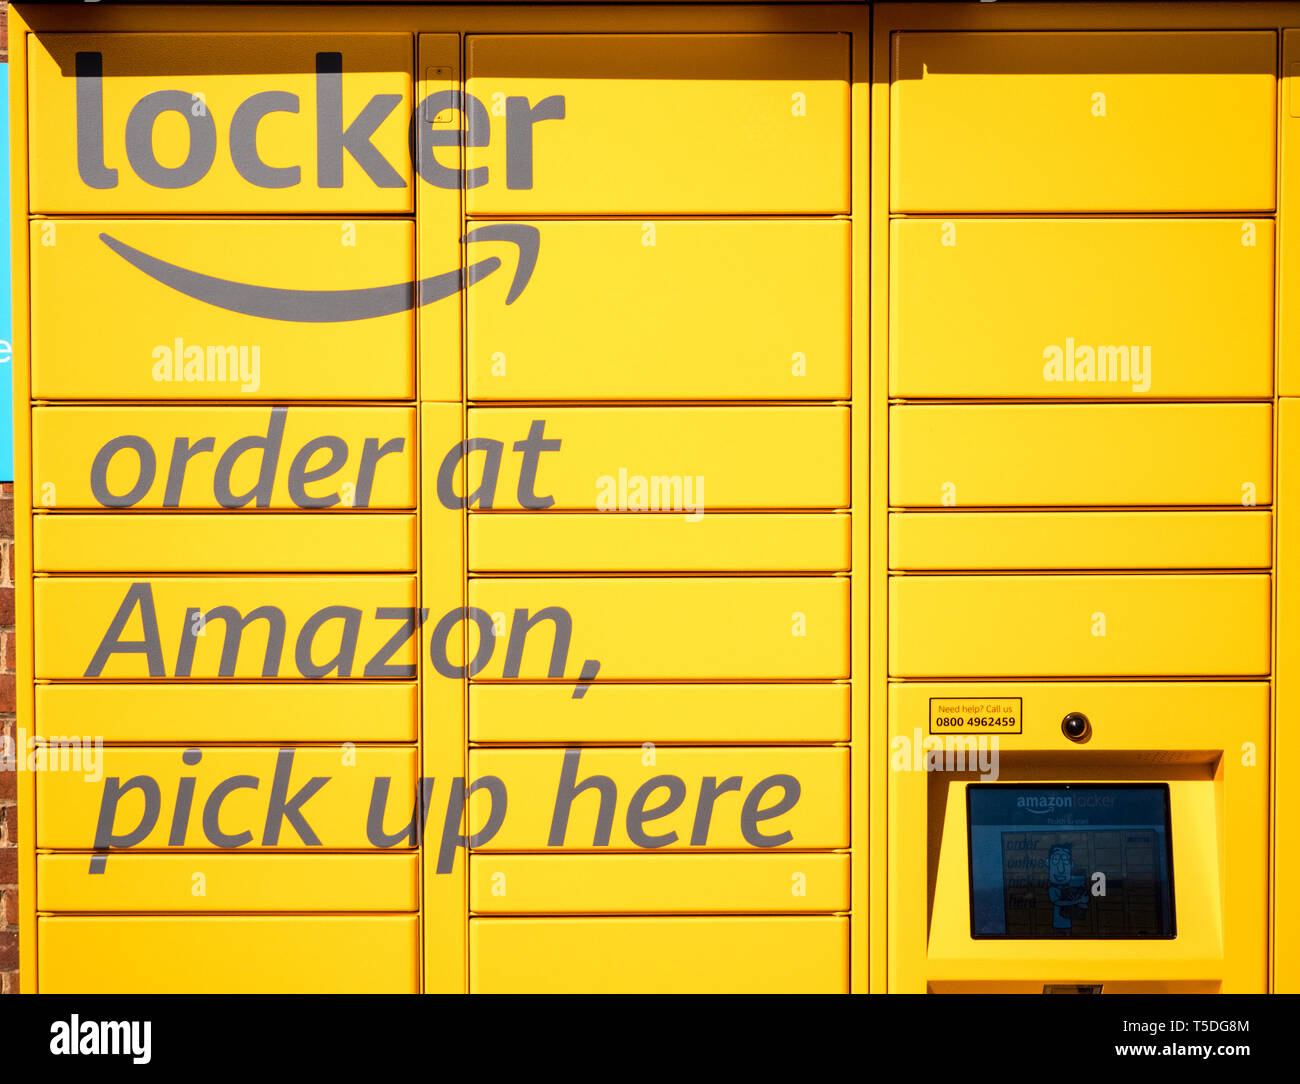 Amazon Locker Self Service Servizio di recapito pacchi Co-Op Store, Reading, Berkshire, Inghilterra, Regno Unito, GB. Foto Stock